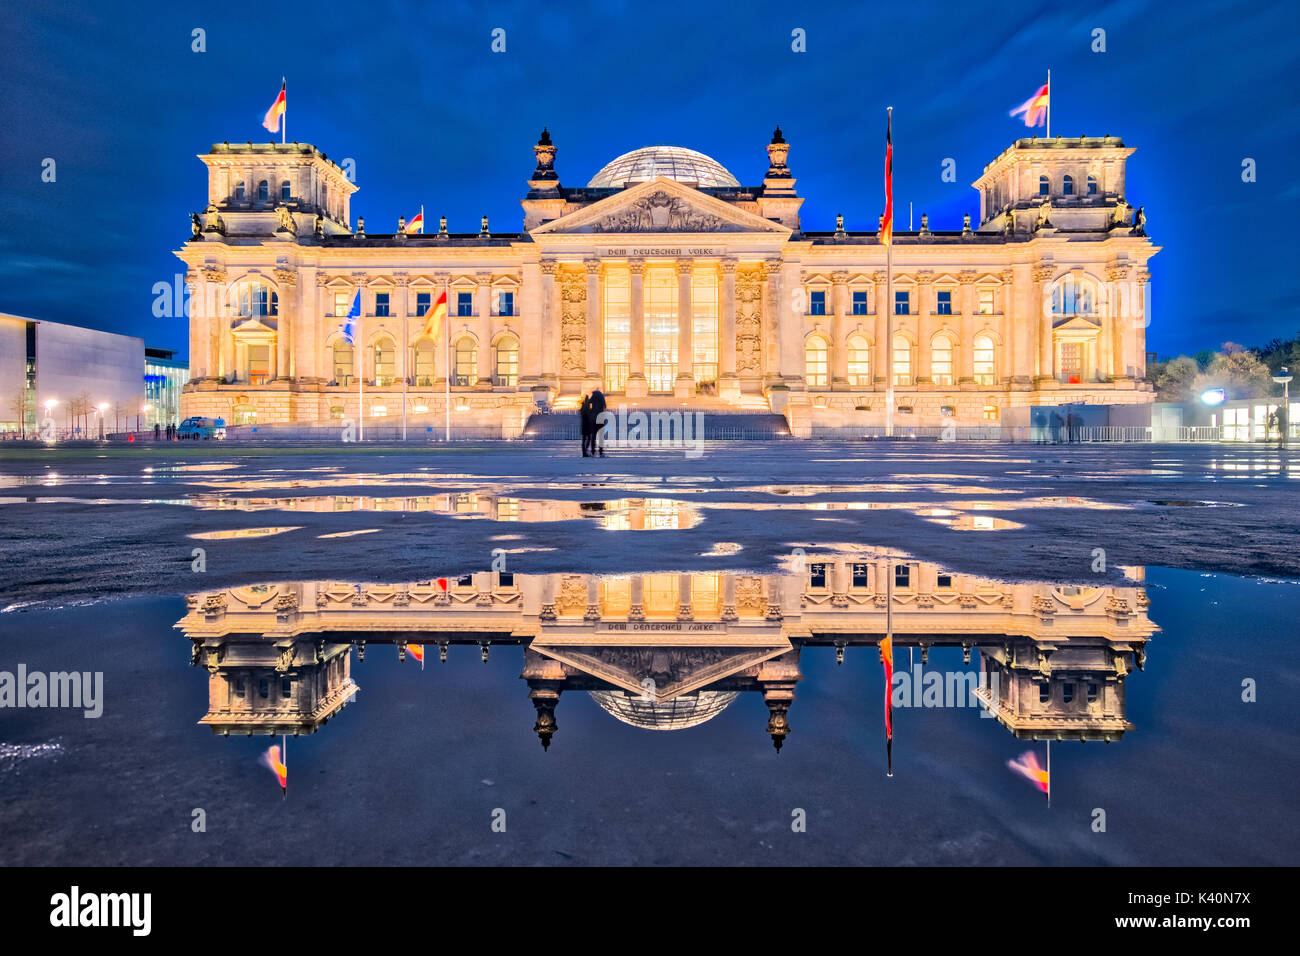 L'edificio del Reichstag di notte a Berlino. (La dedizione Dem deutschen Volke, significato per il popolo tedesco, può essere visto sul fregio) Foto Stock